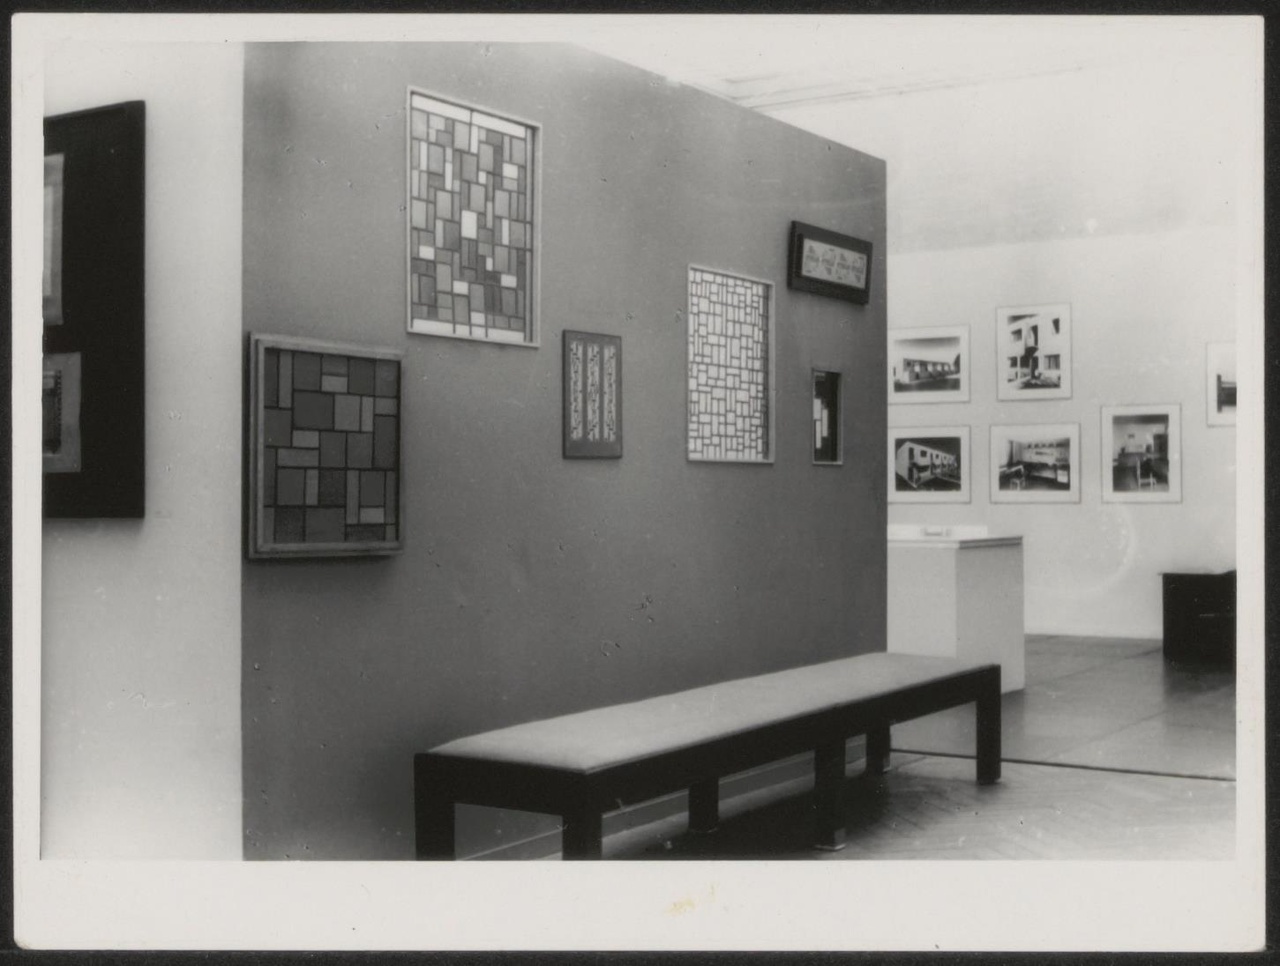 Afbeelding van tentoonstelling De Stijl SMA, 1951, zaal 2, overzicht met bankje